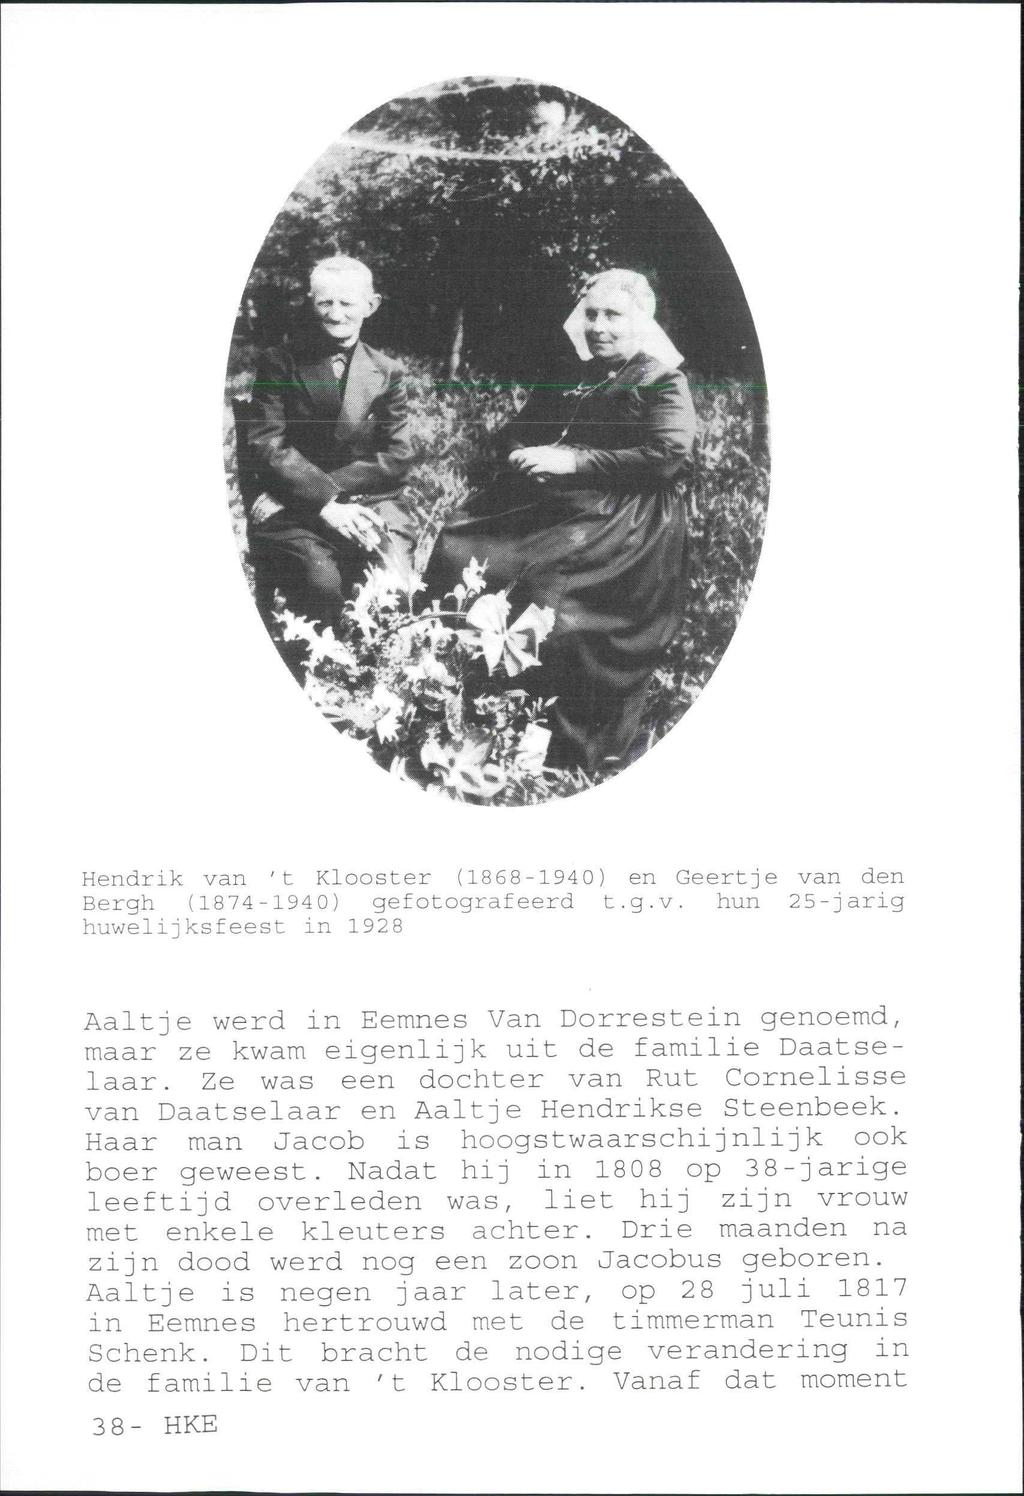 Hendrik van 't Klooster (1868-1940) en Geertje van den Bergh (1874-1940) gefotografeerd t.g.v. hun 25-jarig huwelijksfeest in 1928 Aaltje werd in Eemnes Van Dorrestein genoemd, maar ze kwam eigenlijk uit de familie Daatselaar.